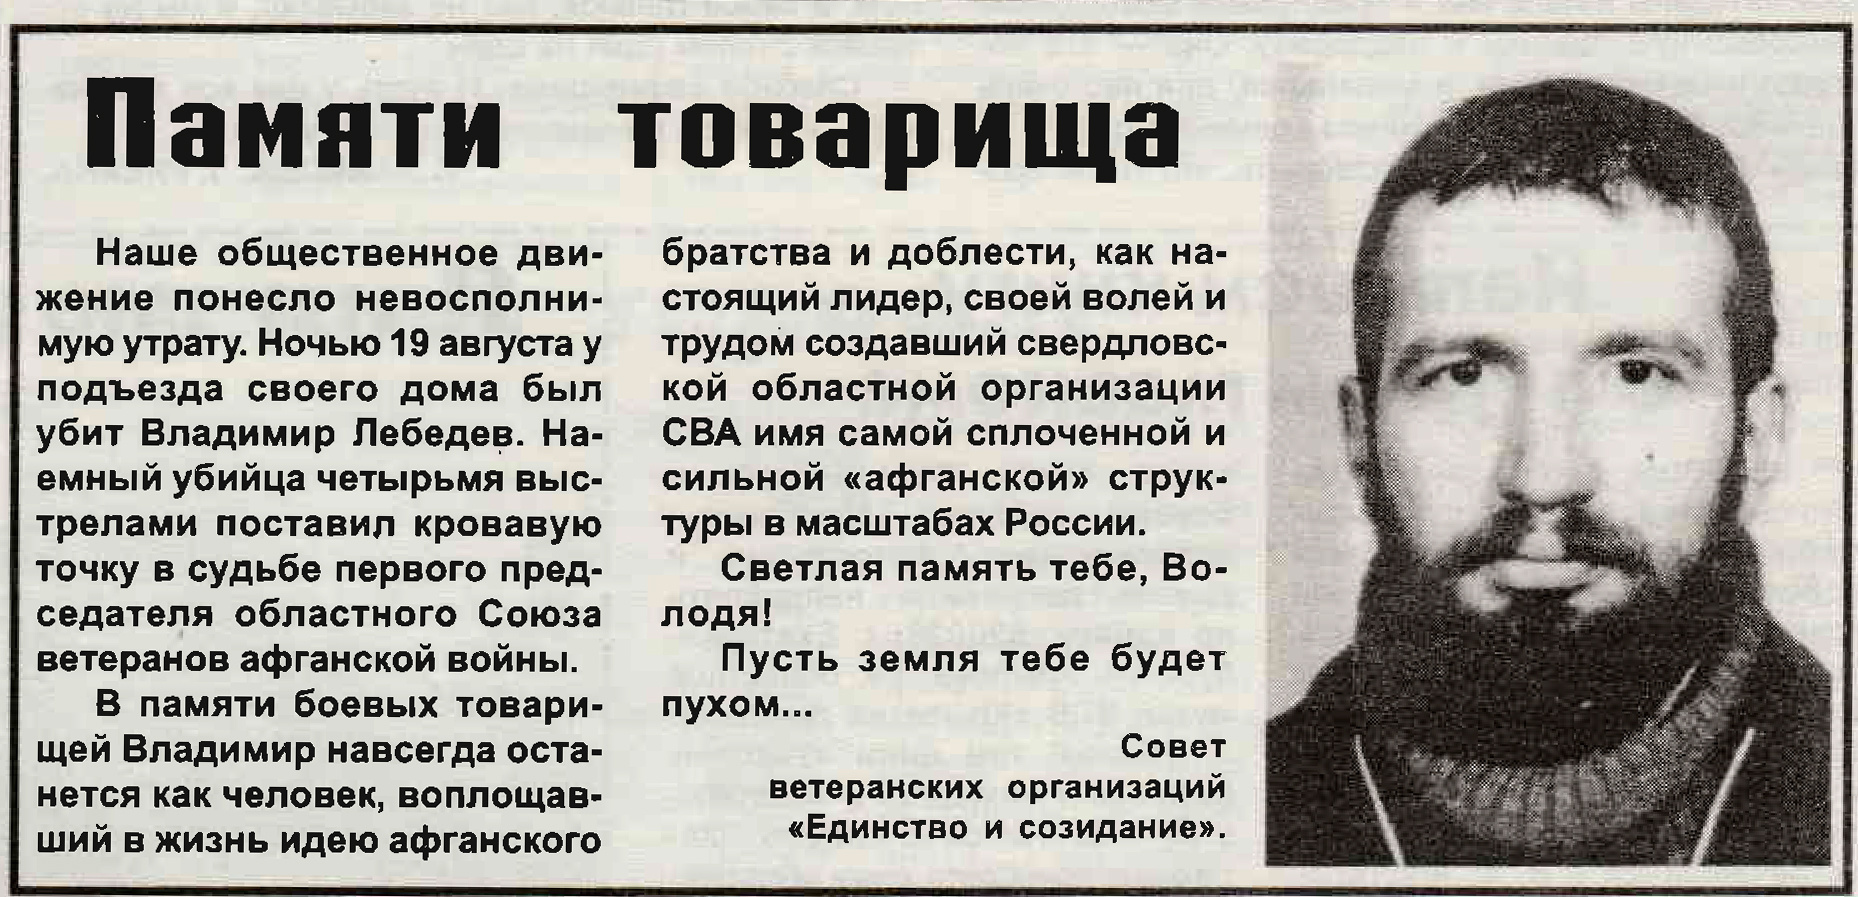 Владимир Лебедев погиб 19 августа. Каждый год в этот день на его могиле собираются друзья и сослуживцы, чтобы почтить его память